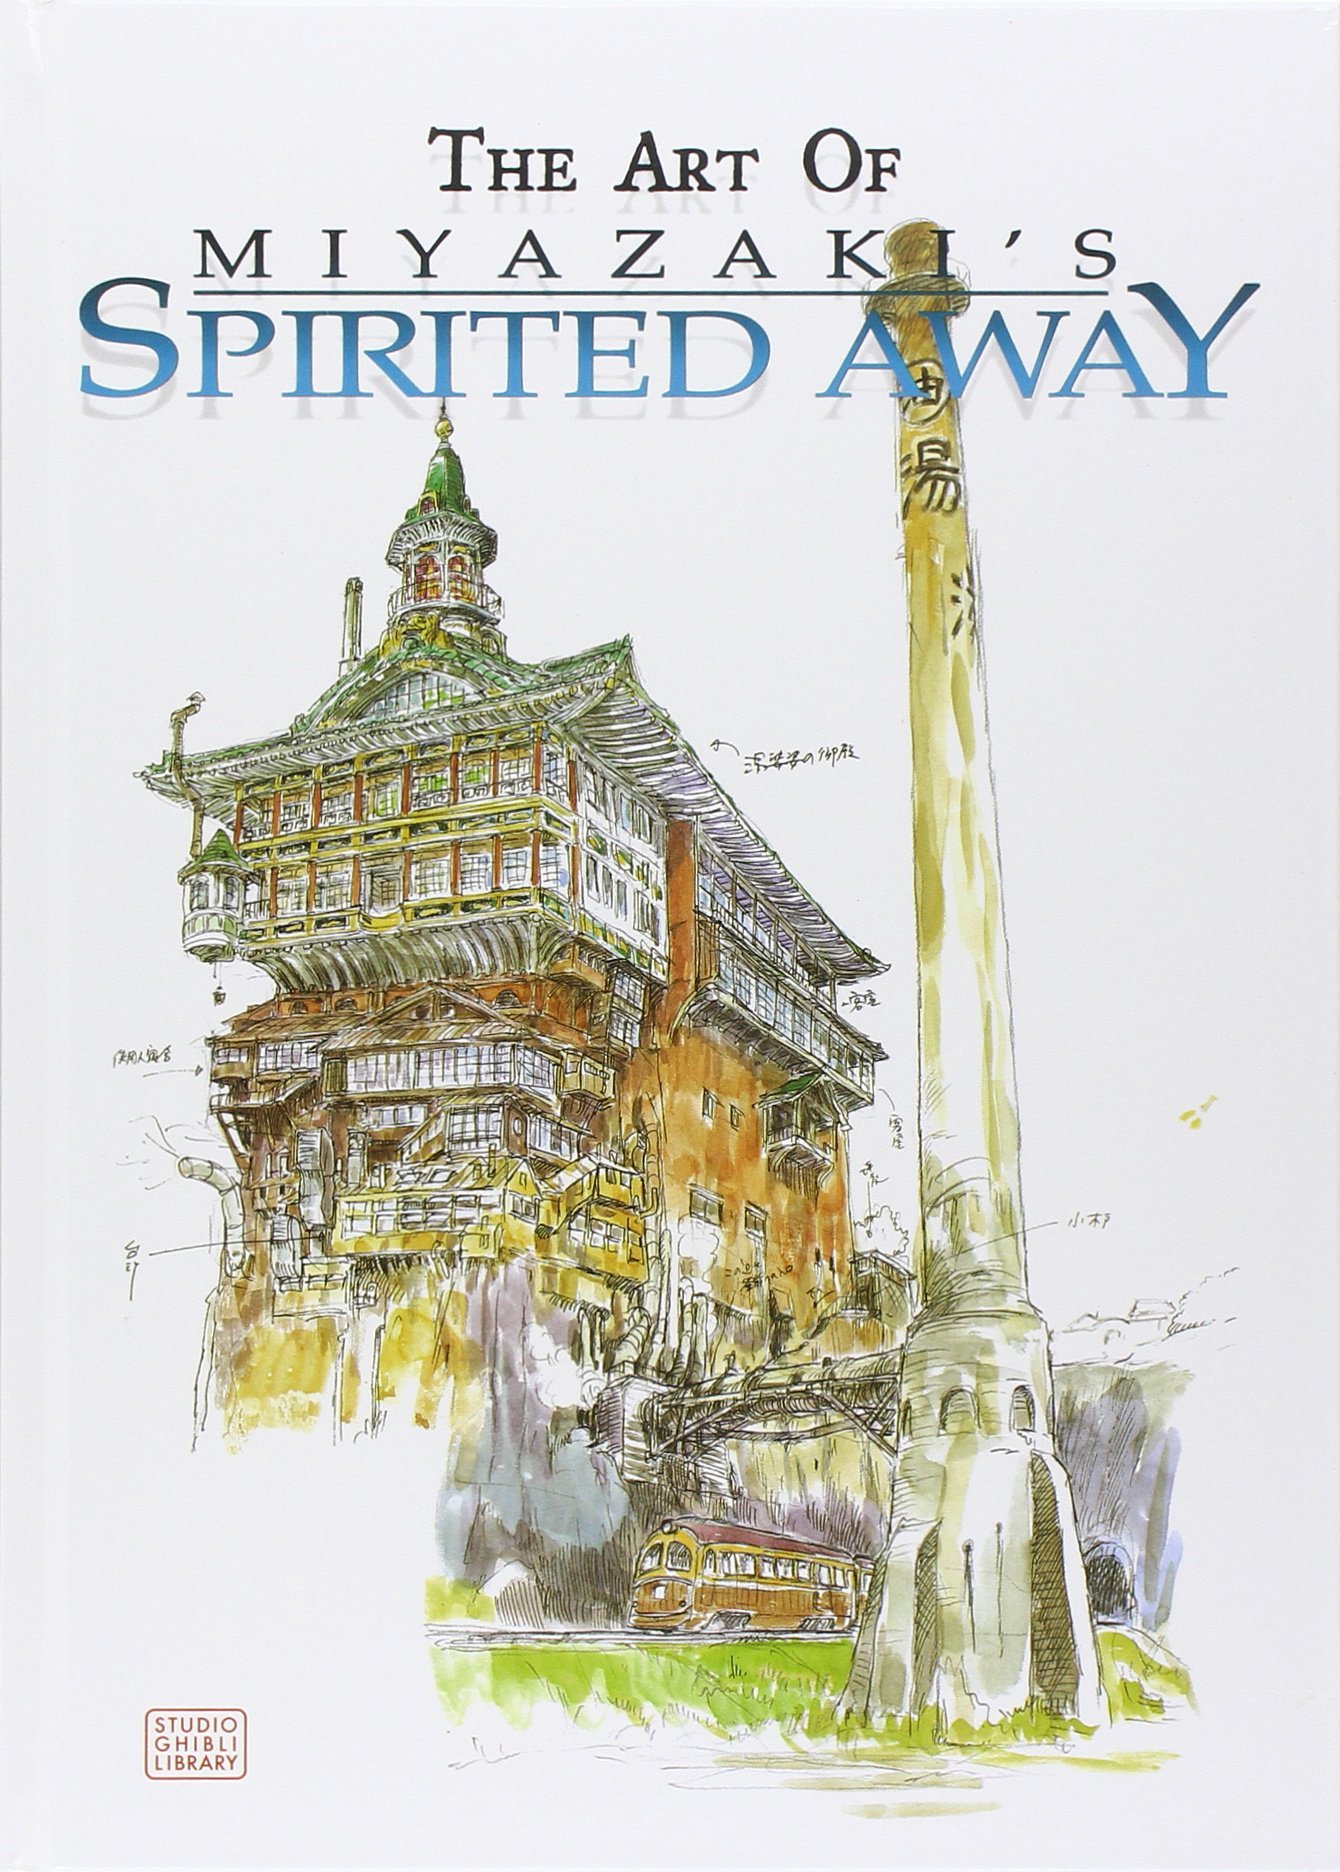 The Art of Spirited Away By Hayao Miyazaki